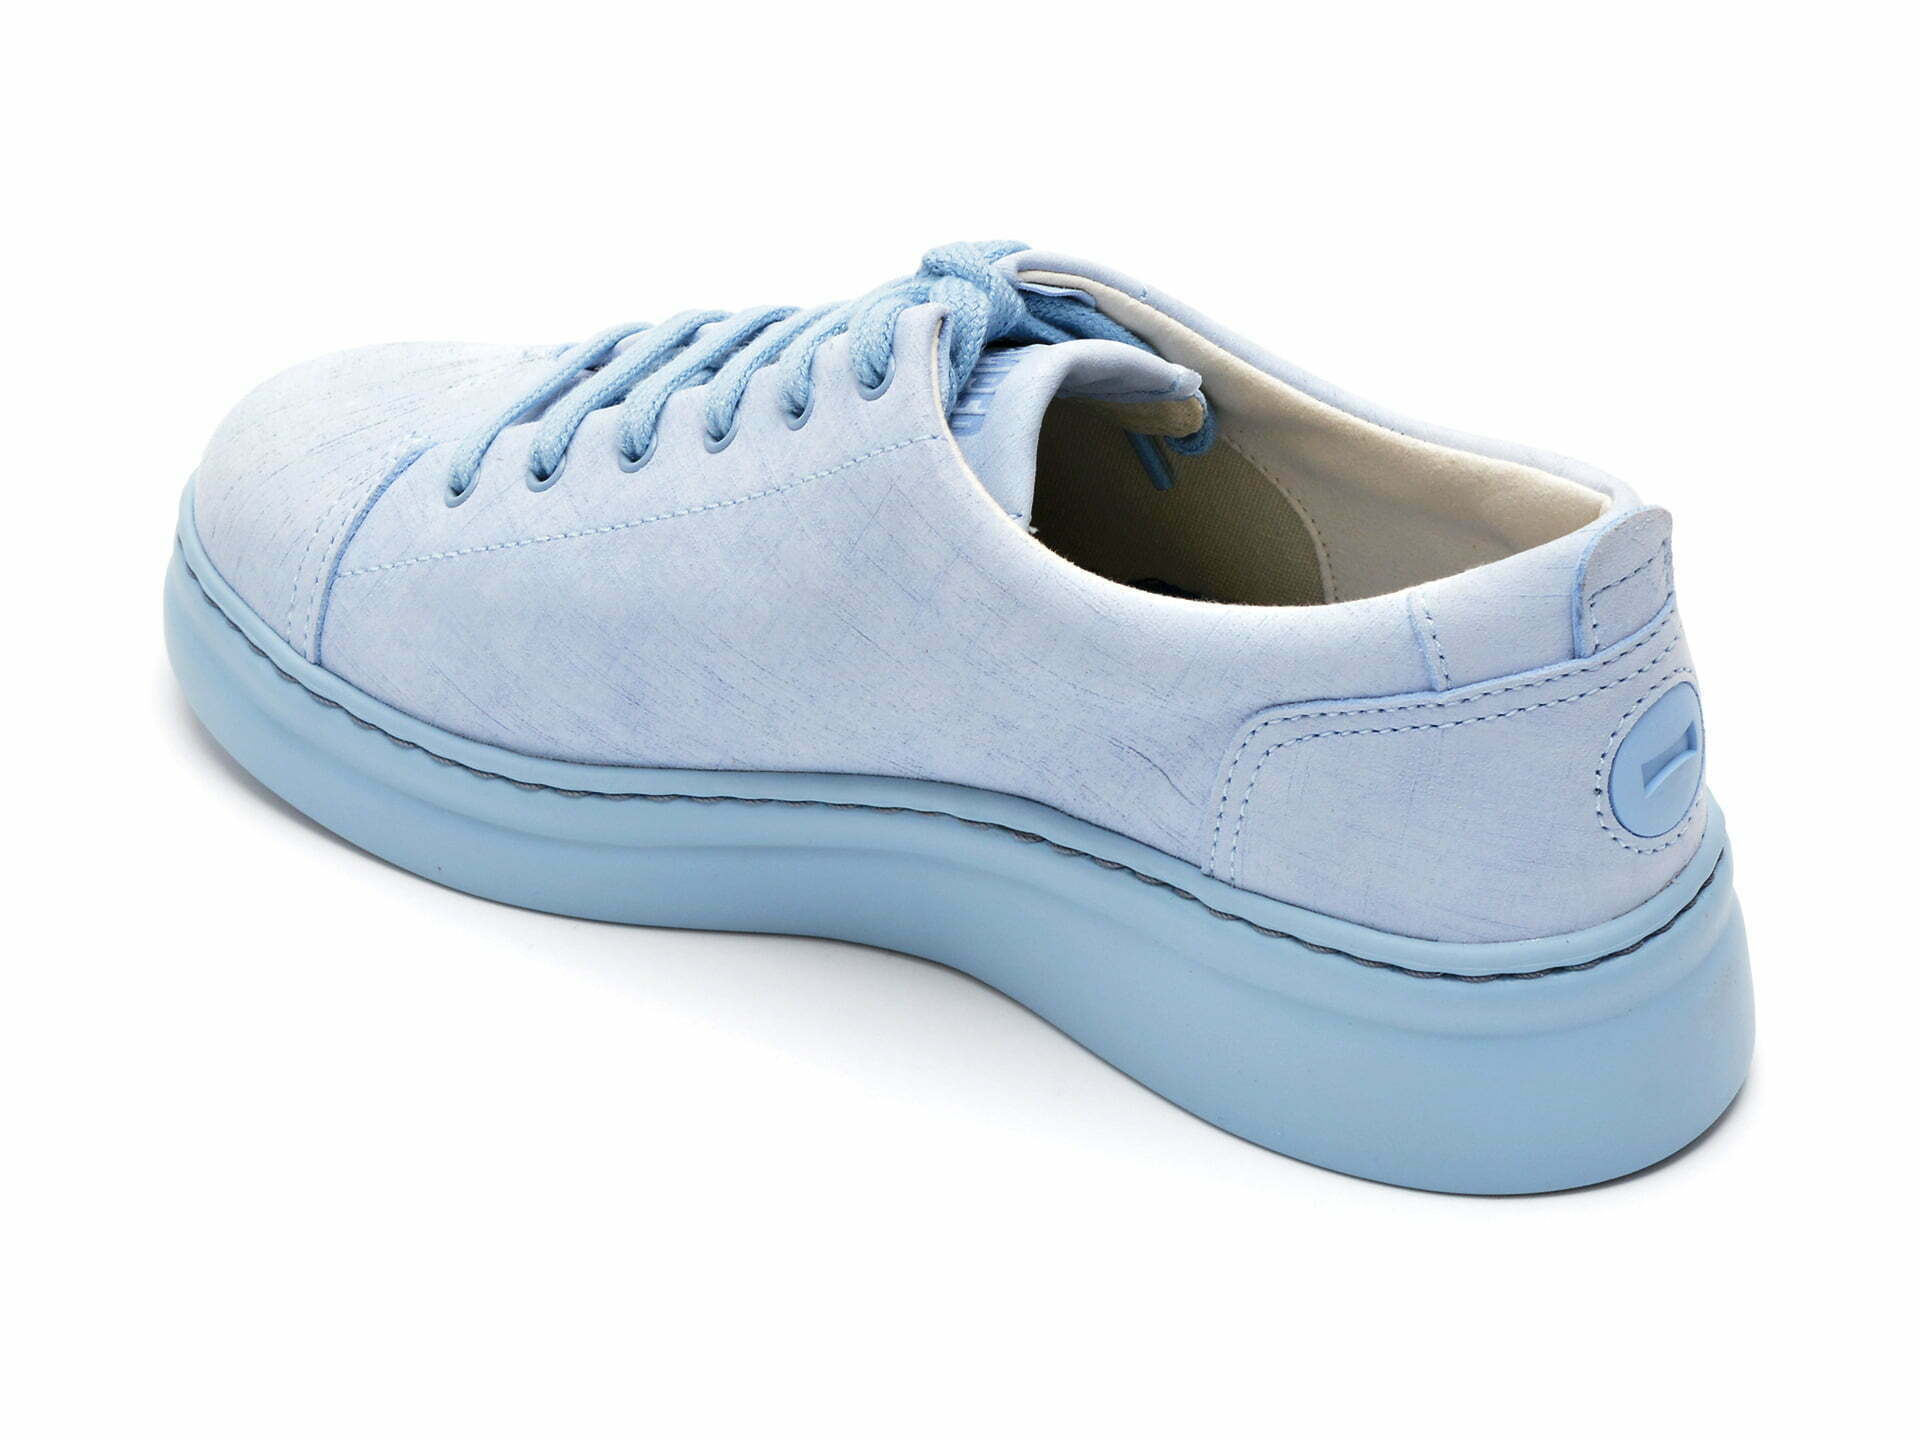 Comandă Încălțăminte Damă, la Reducere  Pantofi sport CAMPER albastri, K2006459, din piele naturala Branduri de top ✓